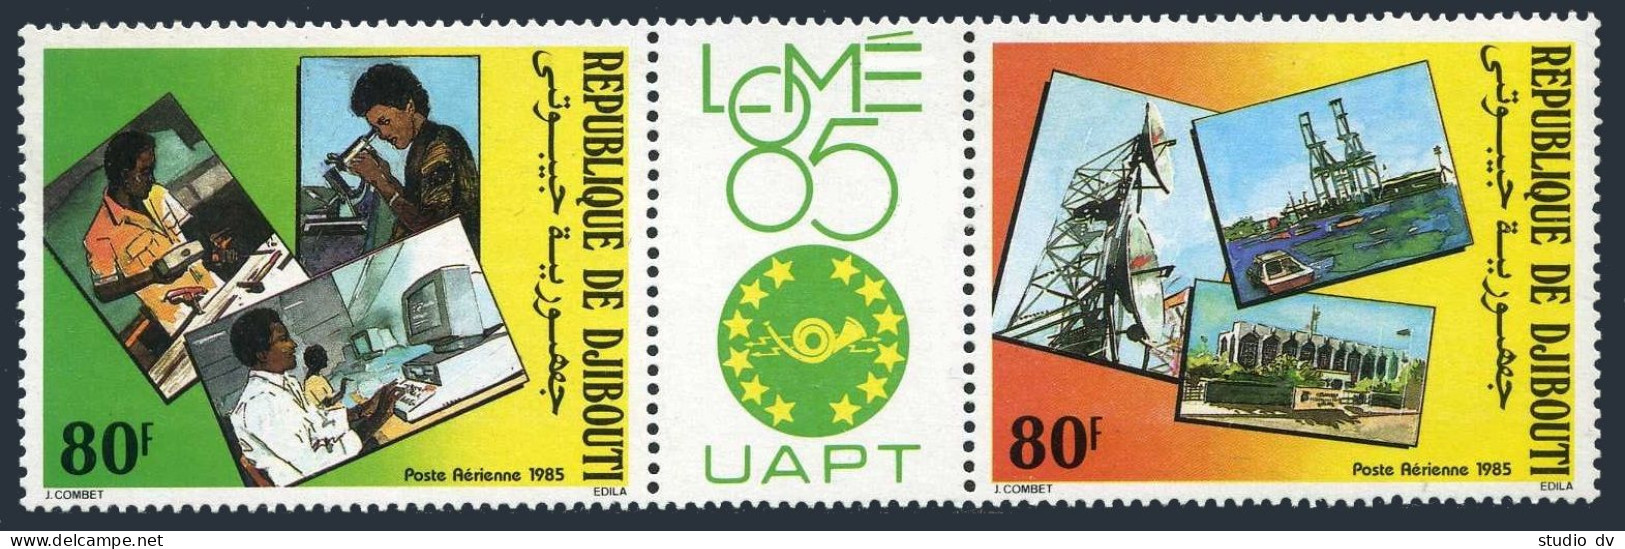 Djibouti C213-C214a/label,MNH.Michel 445-446.PHILEXAFRICA-1985.Telecommunication - Dschibuti (1977-...)